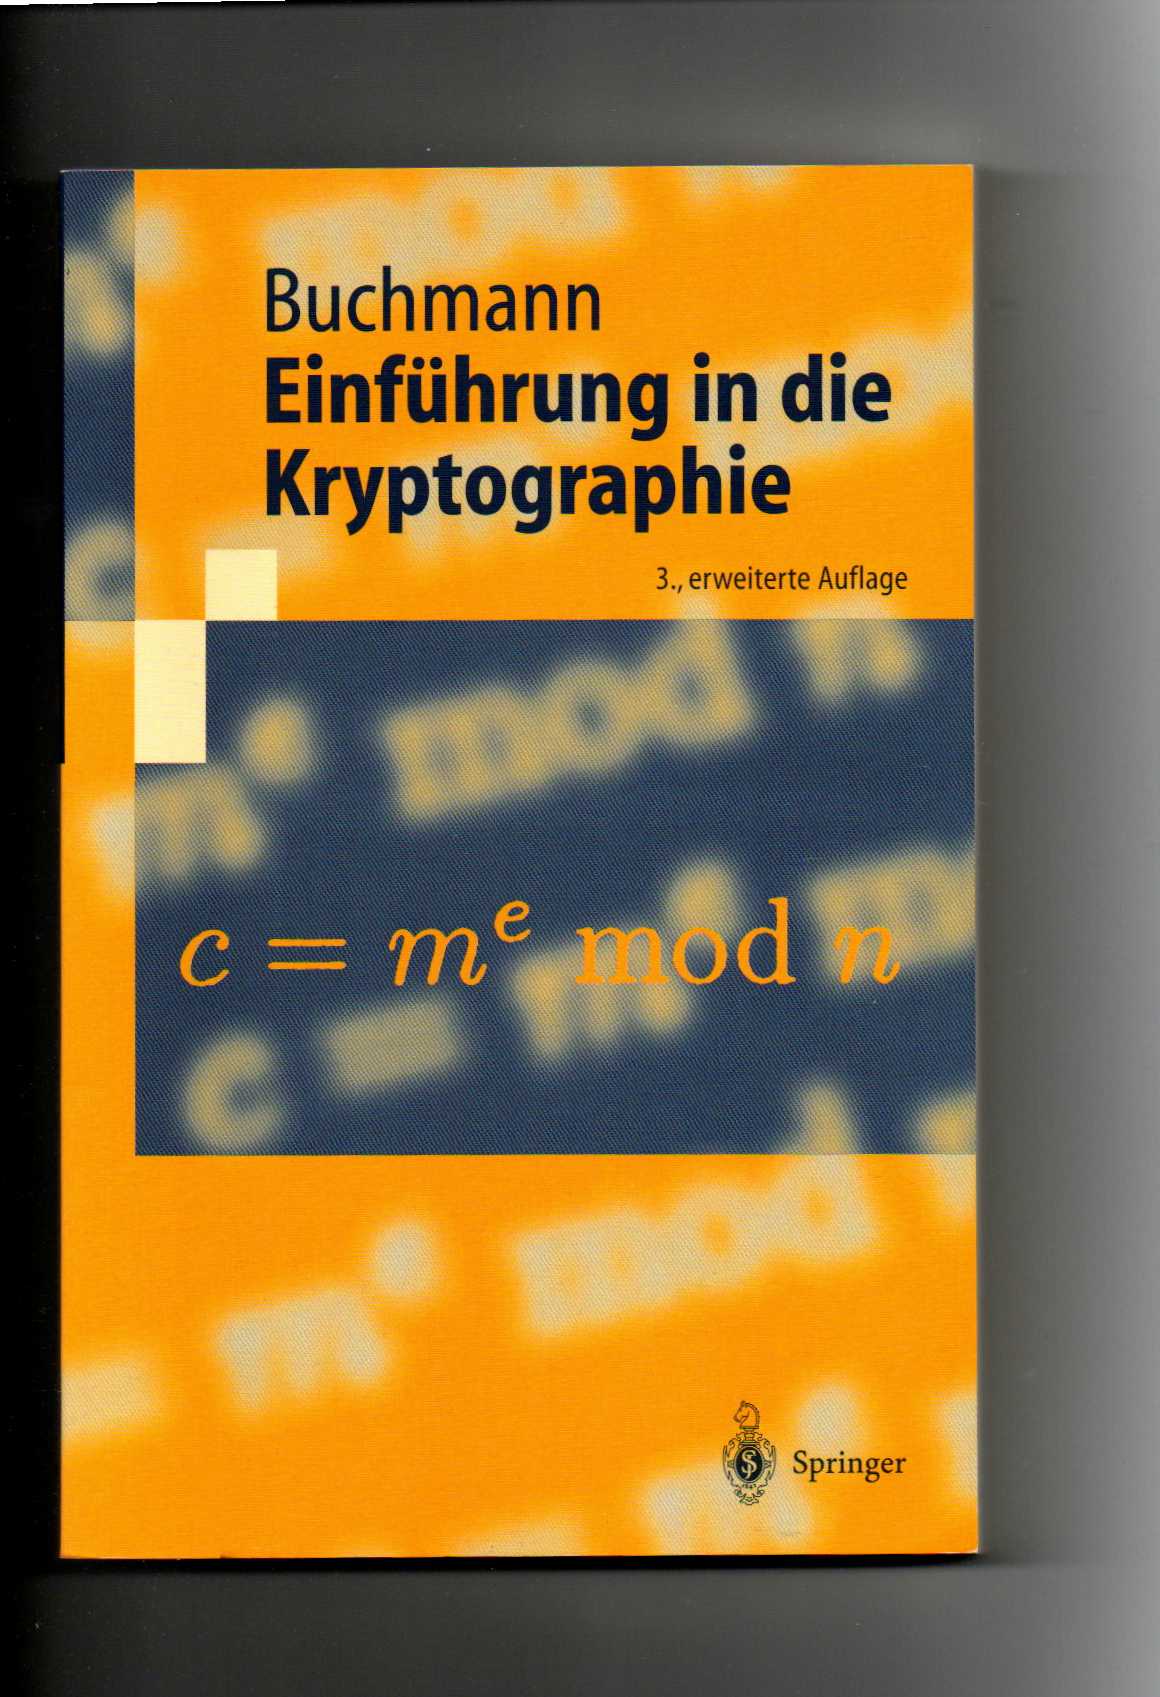 Johannes Buchmann, Einführung in die Kryptographie - Buchmann, Johannes